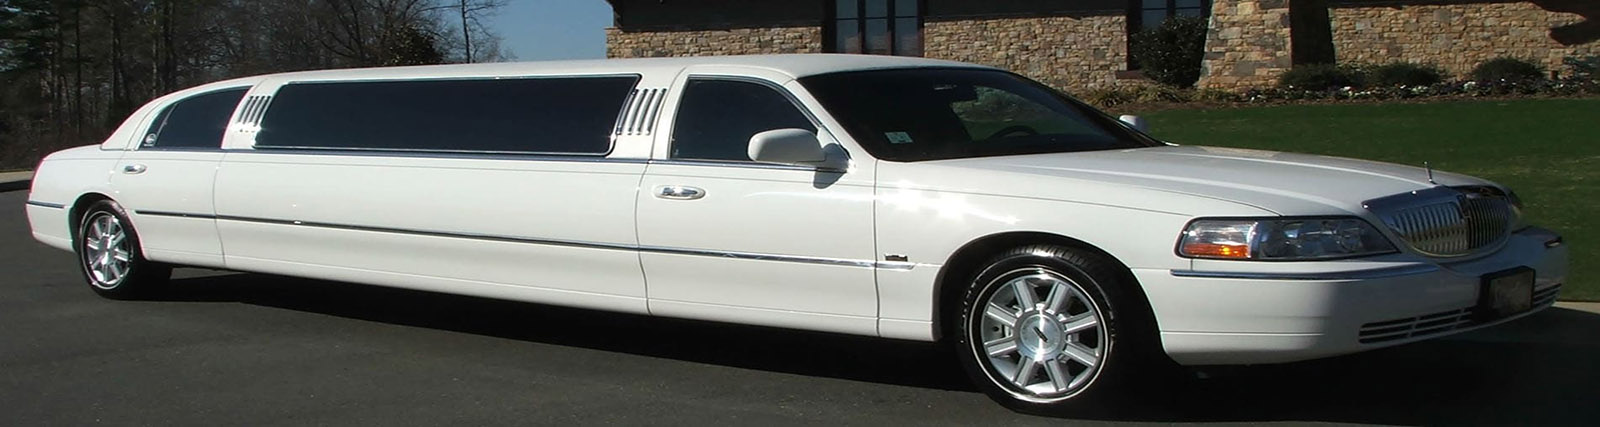 chrysler-limousine